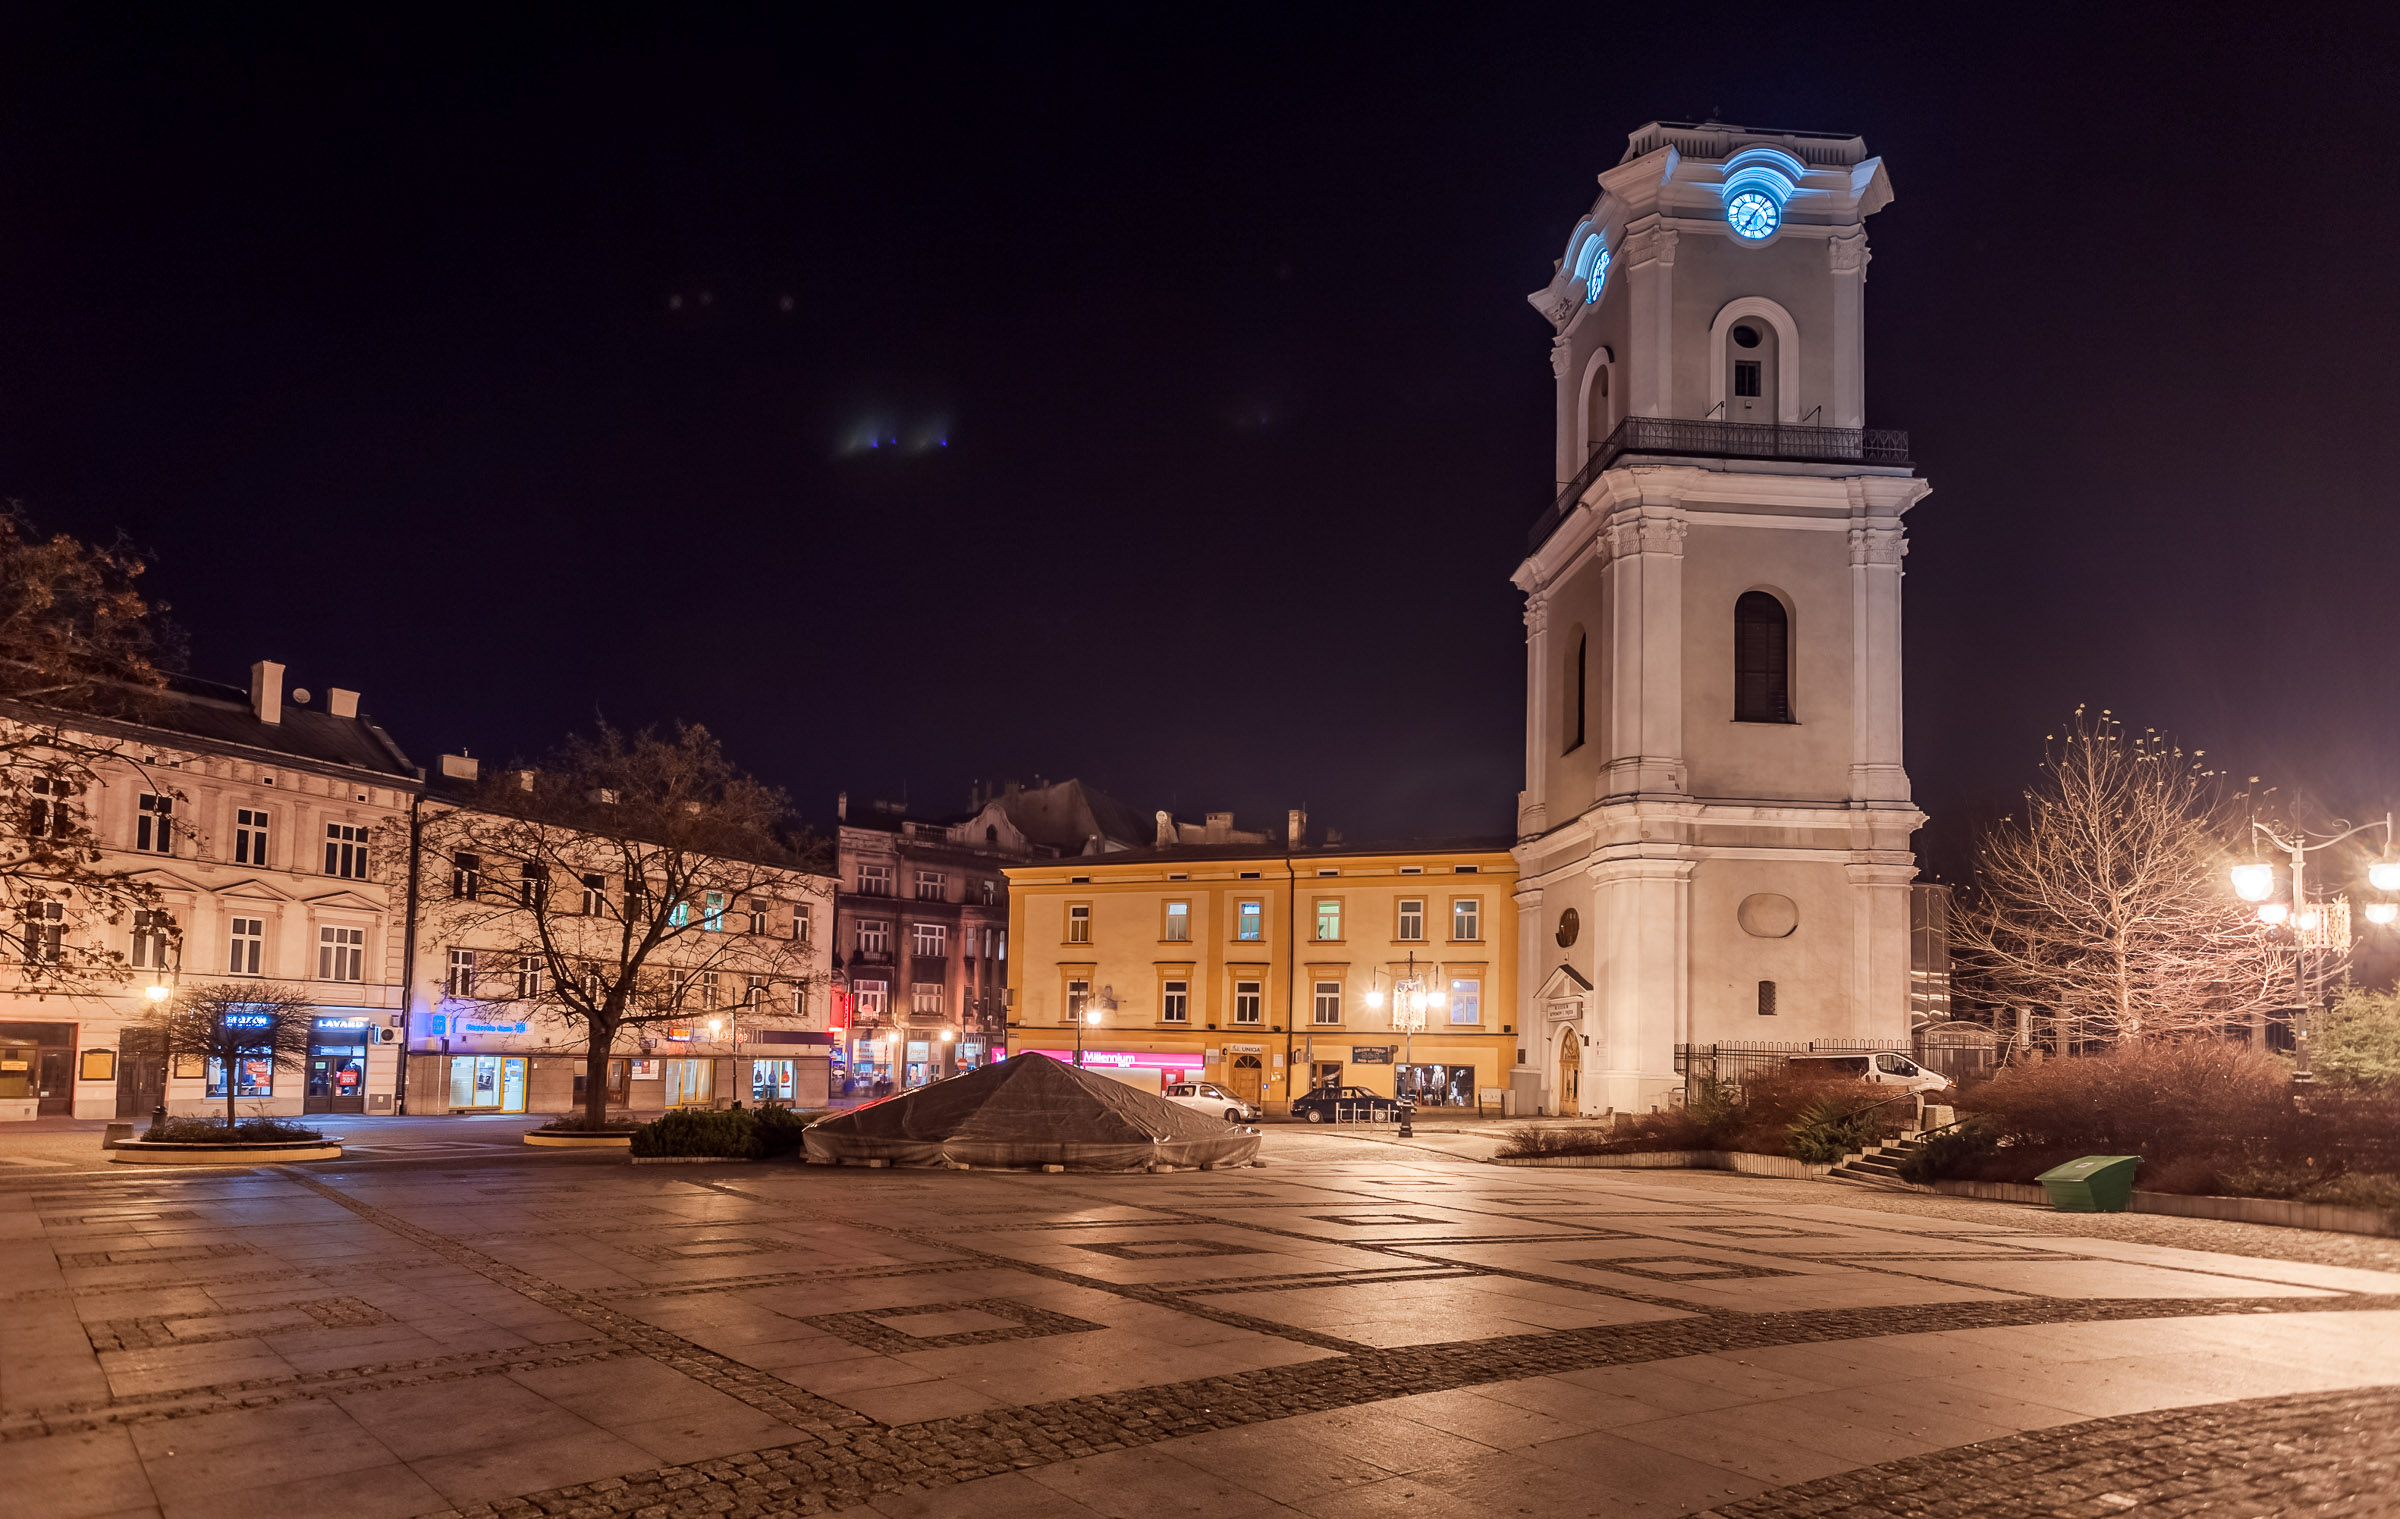 Wieża zegarowa w Przemyślu. Zdjęcie nocą.